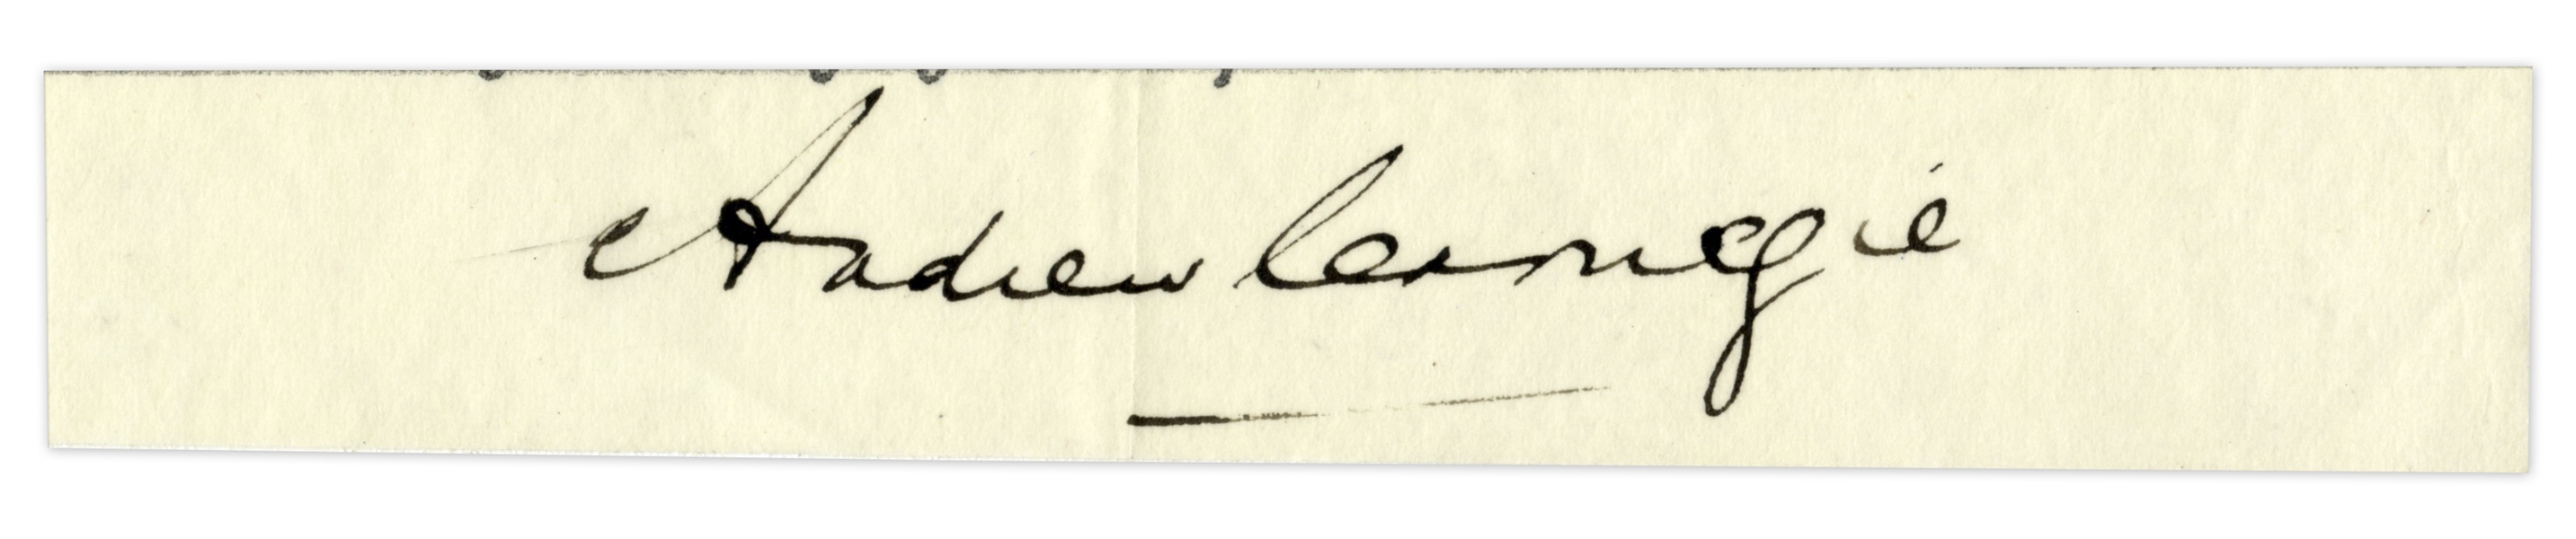 Andrew Carnegie Signature